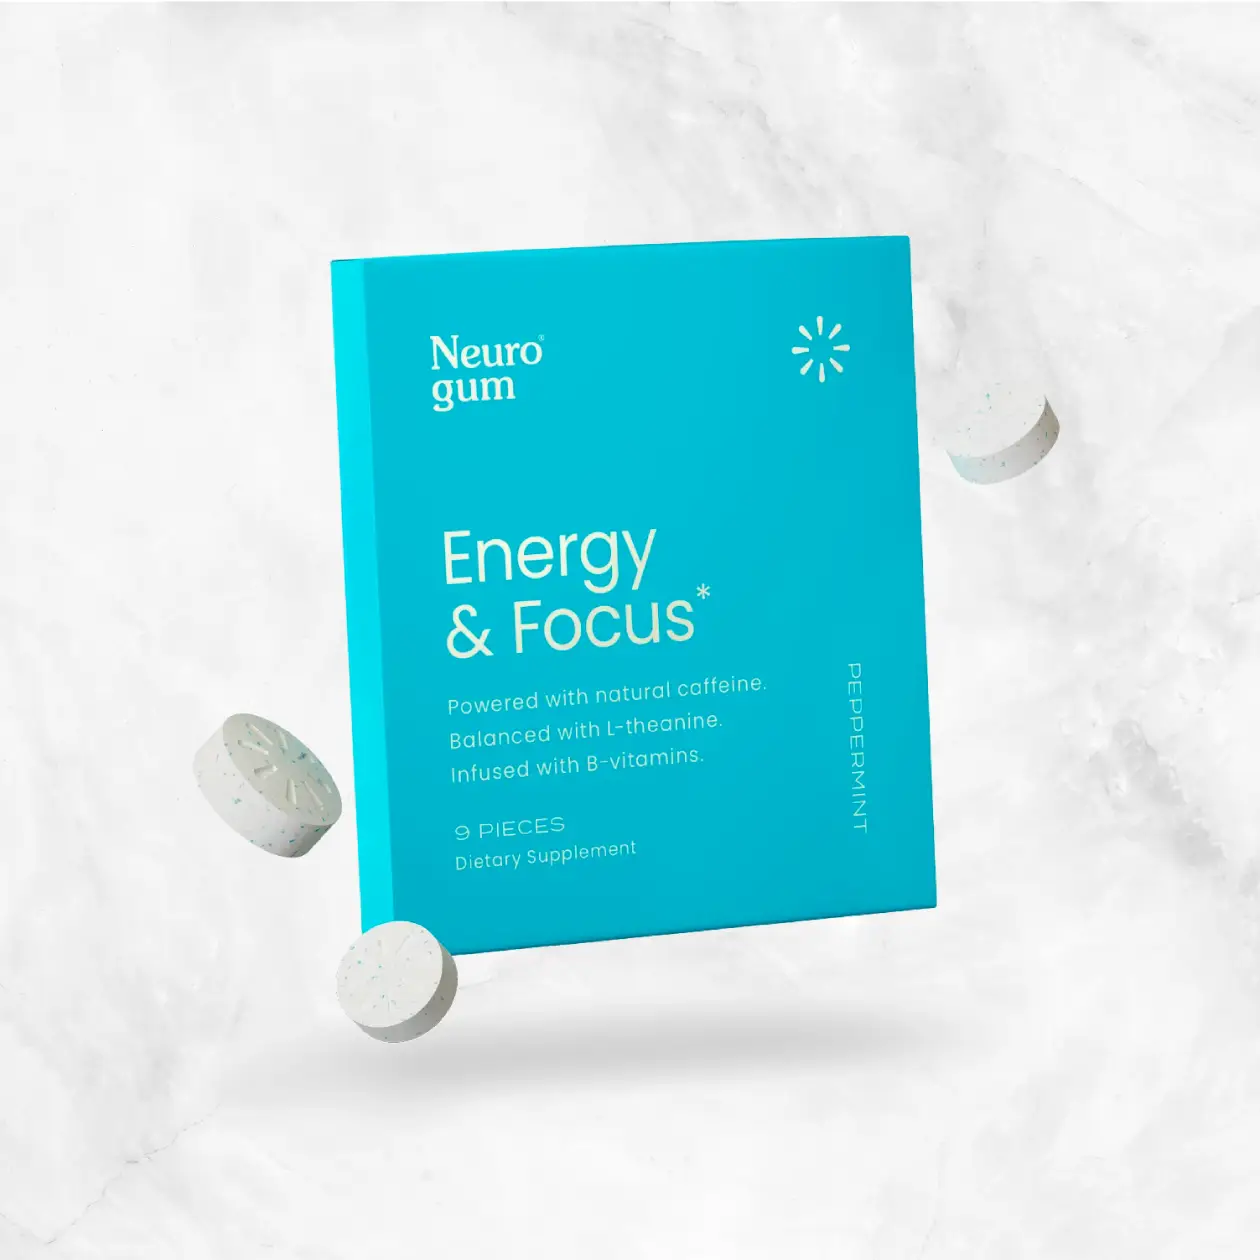 Energy and Focus Gum